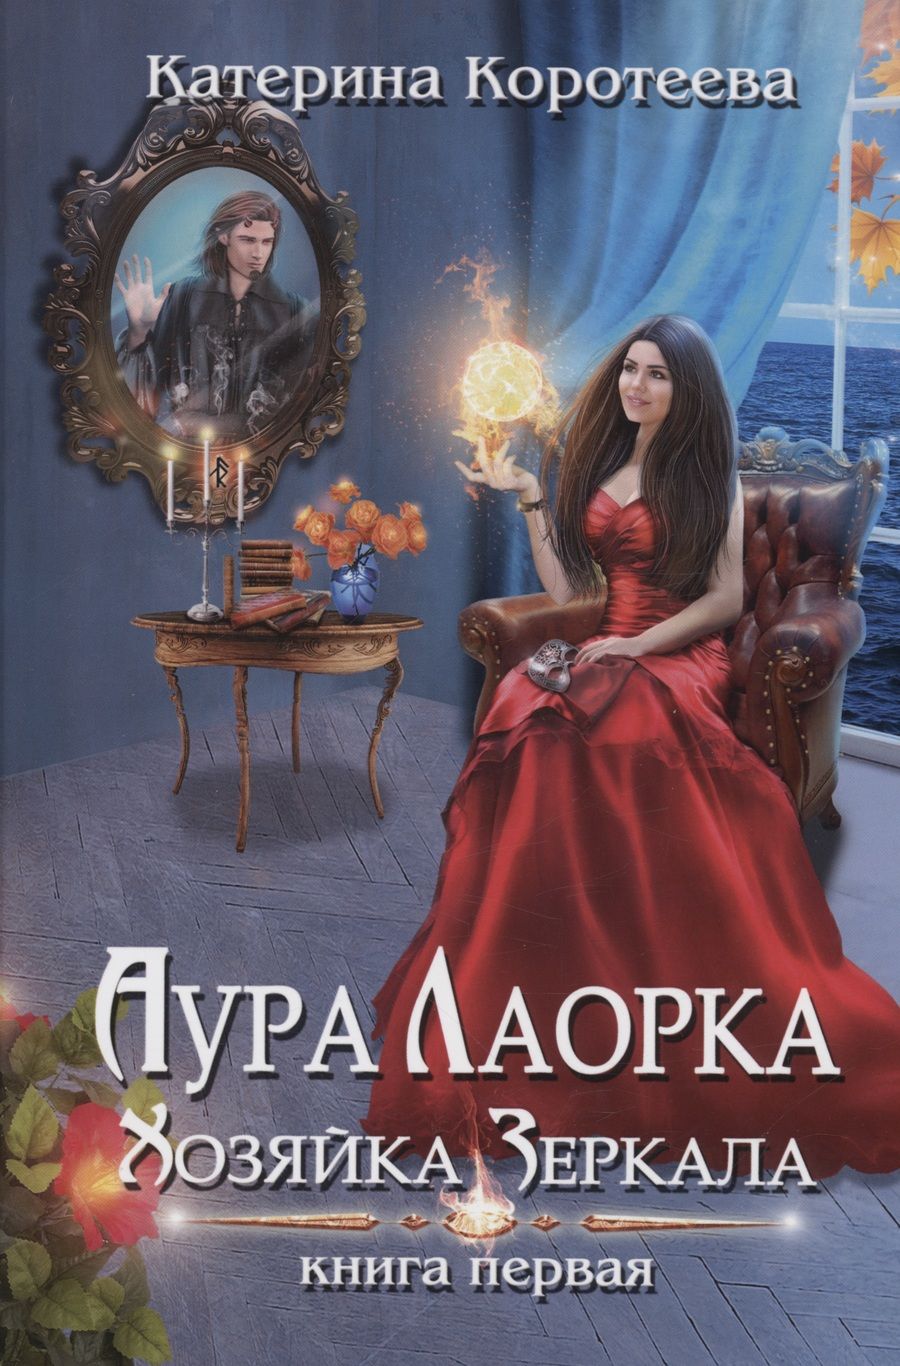 Обложка книги "Коротеева: Аура Лаорка. Хозяйка Зеркала"